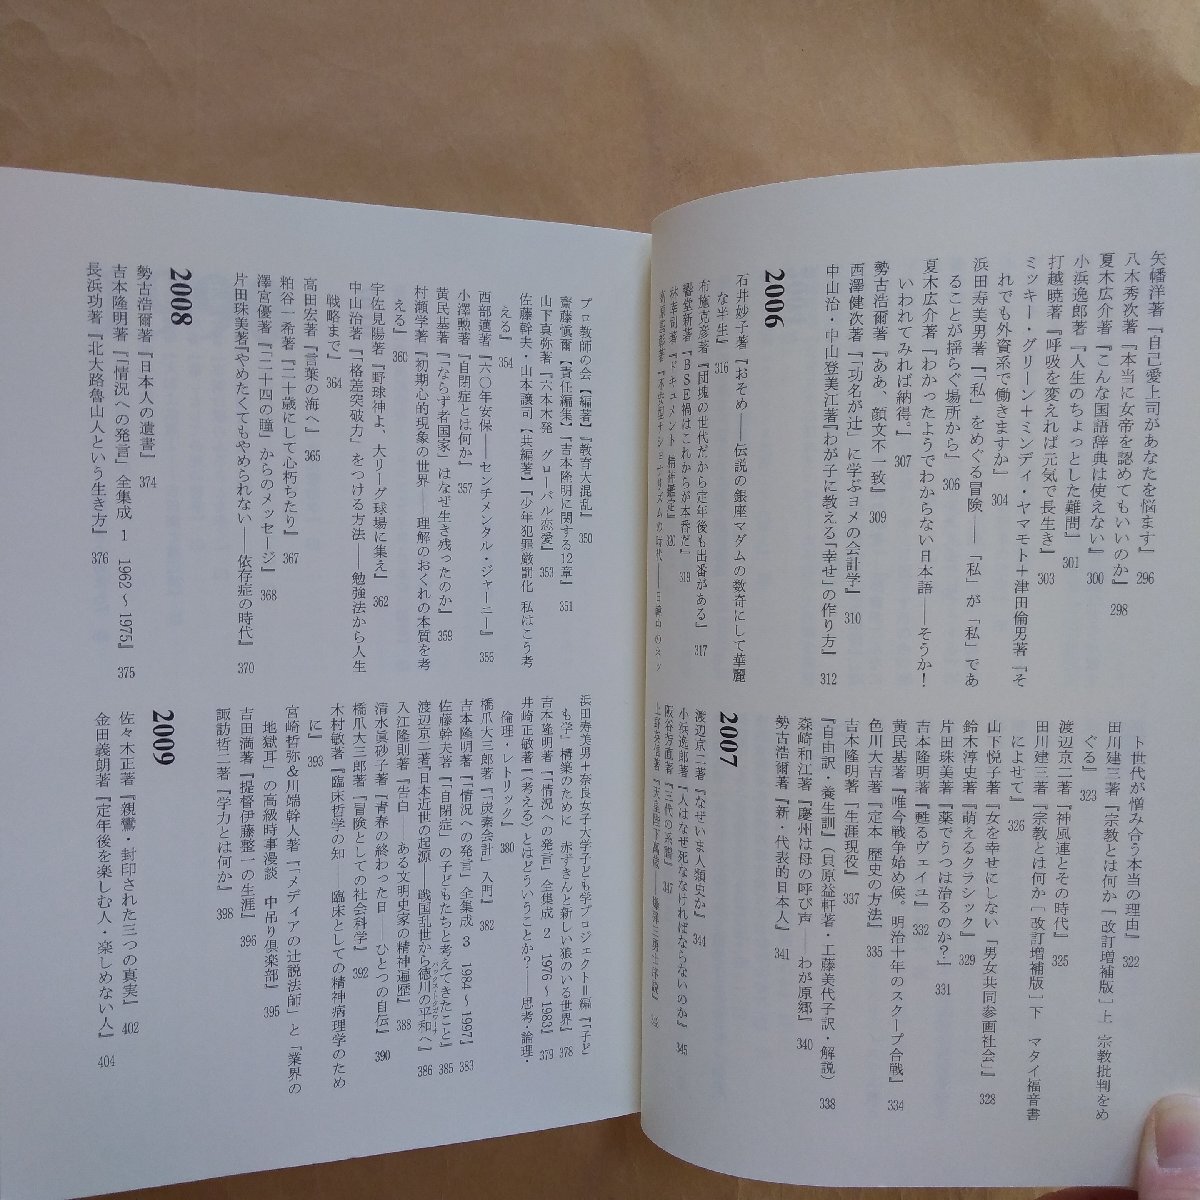 ◎編集者=小川哲生の本　わたしはこんな本を作ってきた　小川哲生著　言視舎　2011年初版　430p　付録付　_画像10